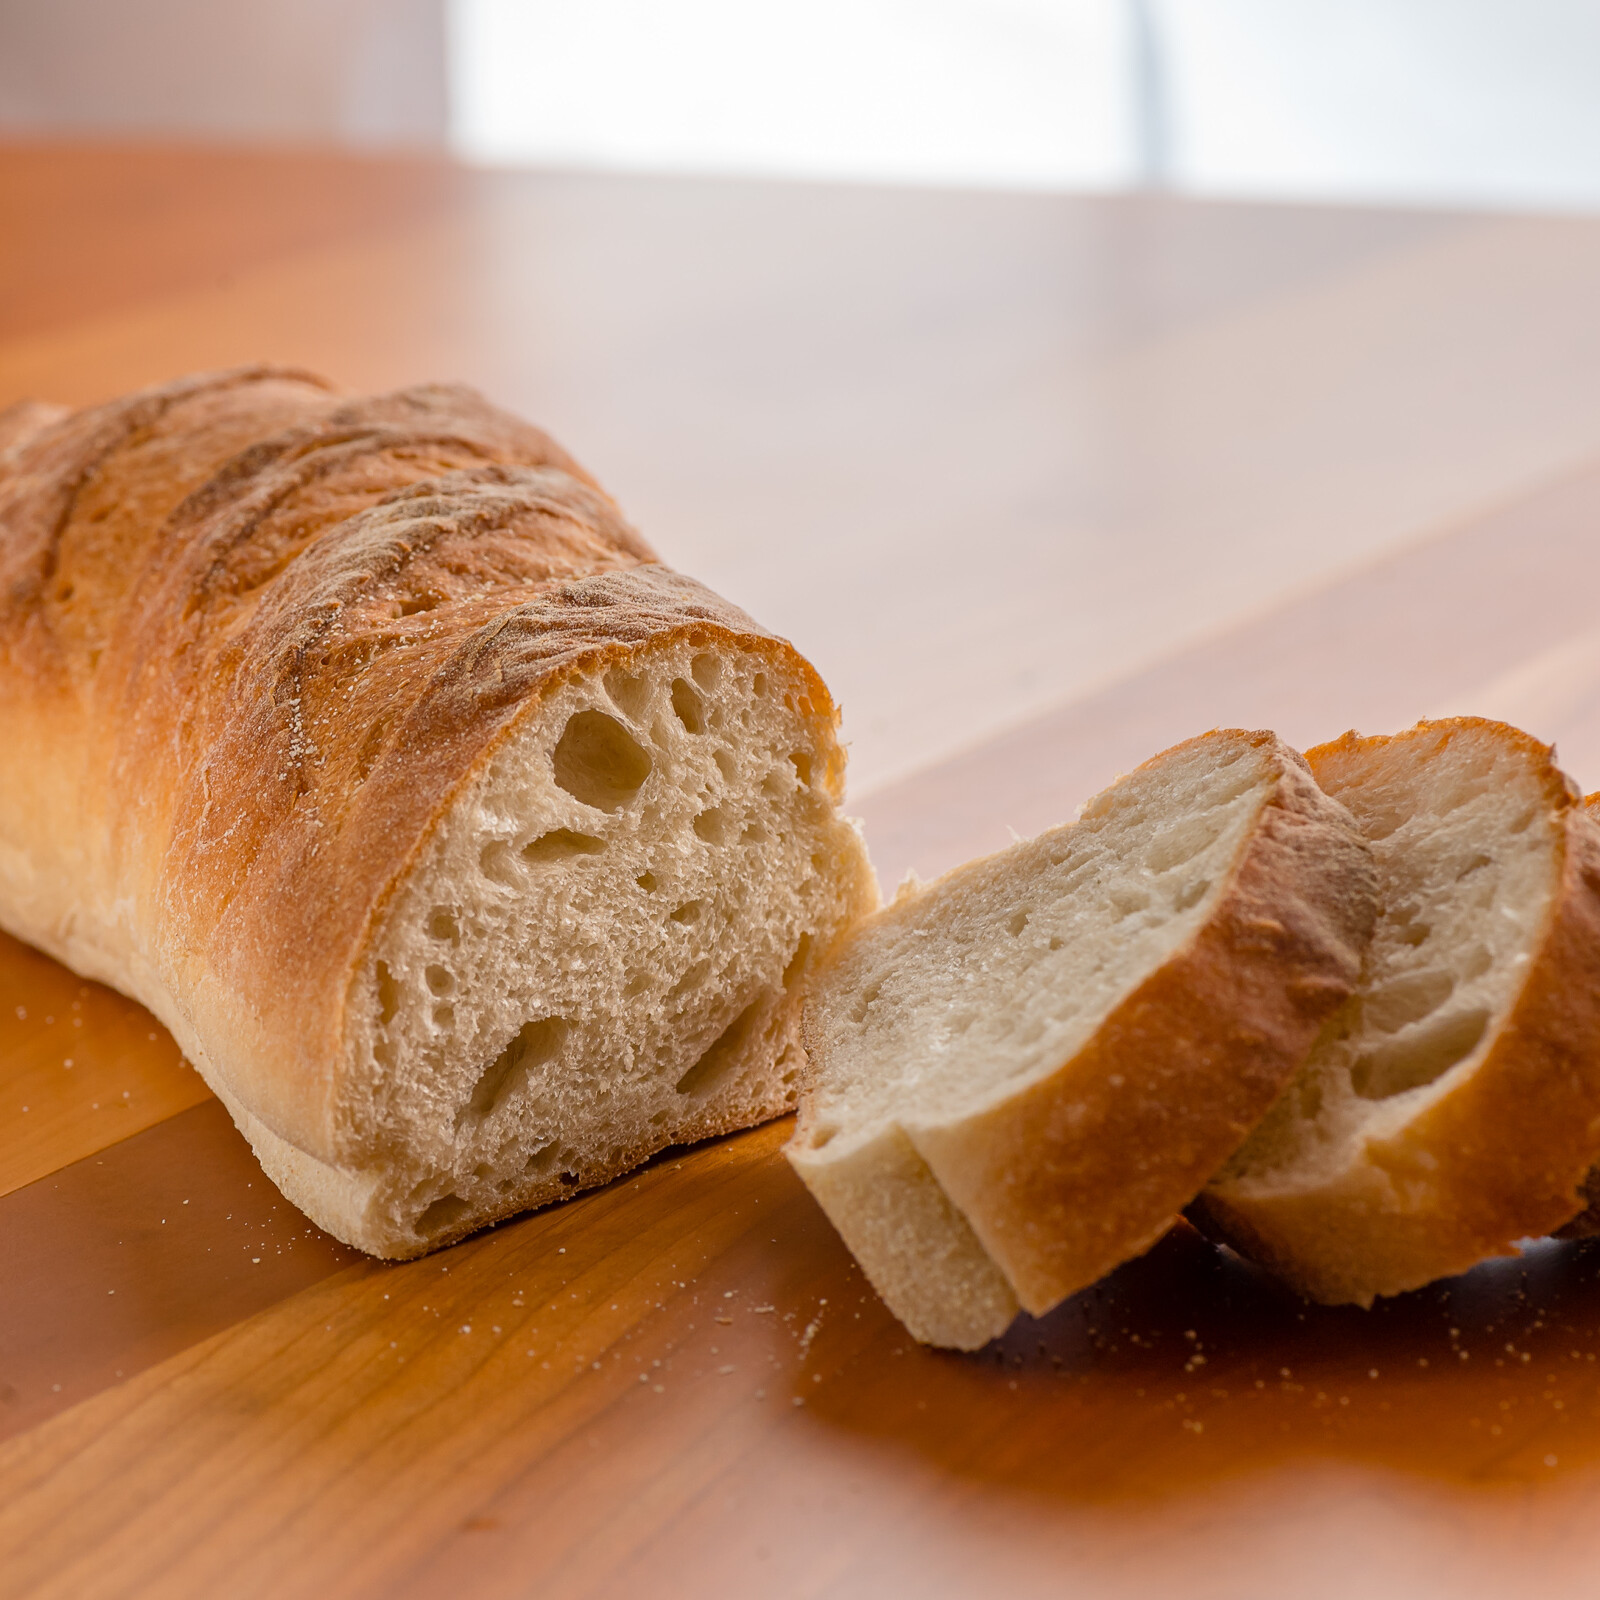 sliced loaf of Pane Toscano bread